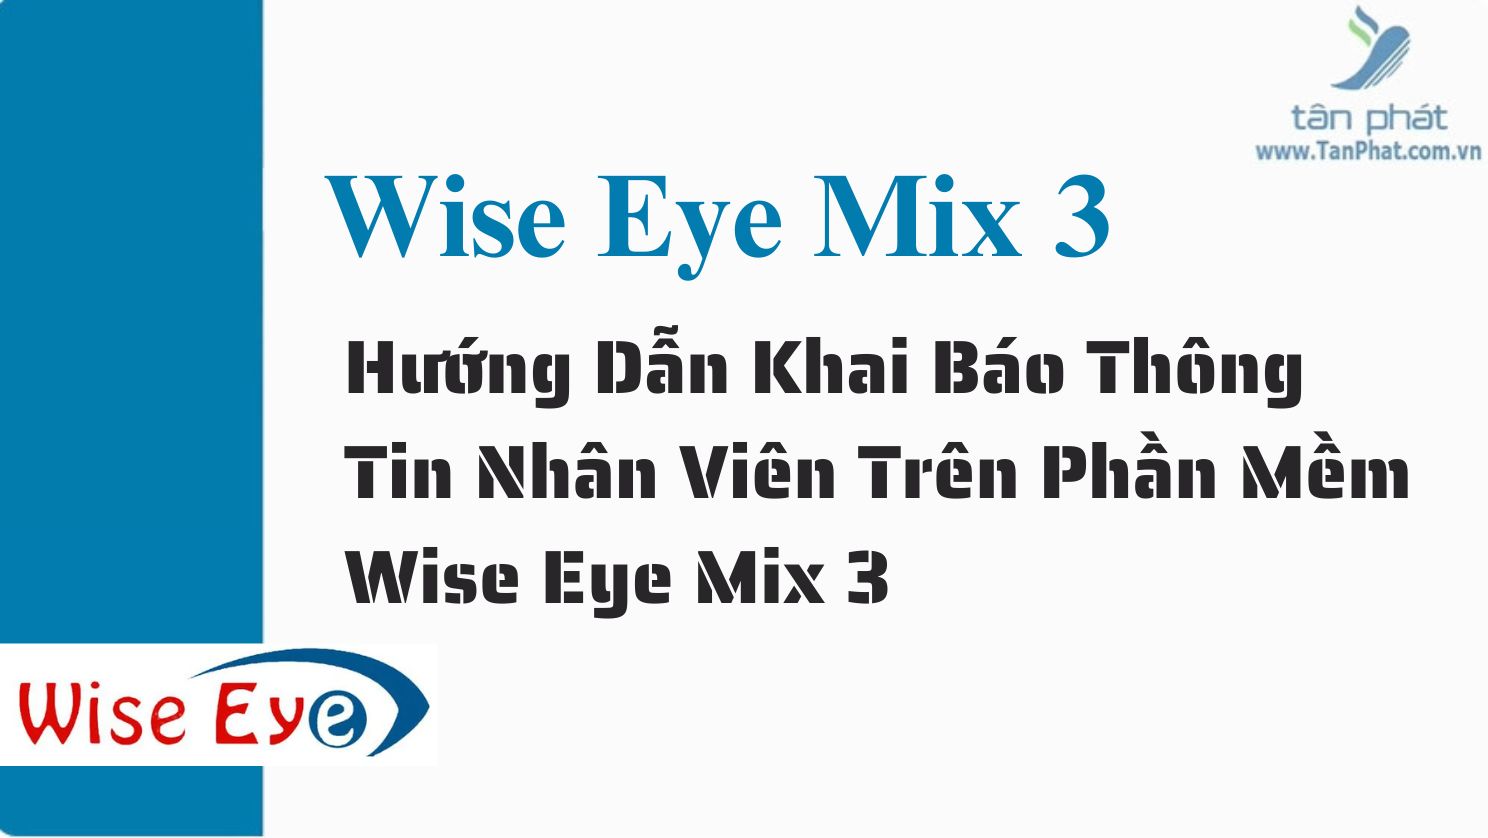 Hướng dẫn khai báo thông tin nhân viên trên phần mềm Wise Eye Mix 3 trên máy RJ550 RJ550A RJ550 Plus RJ850A RJ1000 ZKT360 K300 X938C X958C X958A  T8plus X989C RJ919 RJ879C T6C  B3C SC4